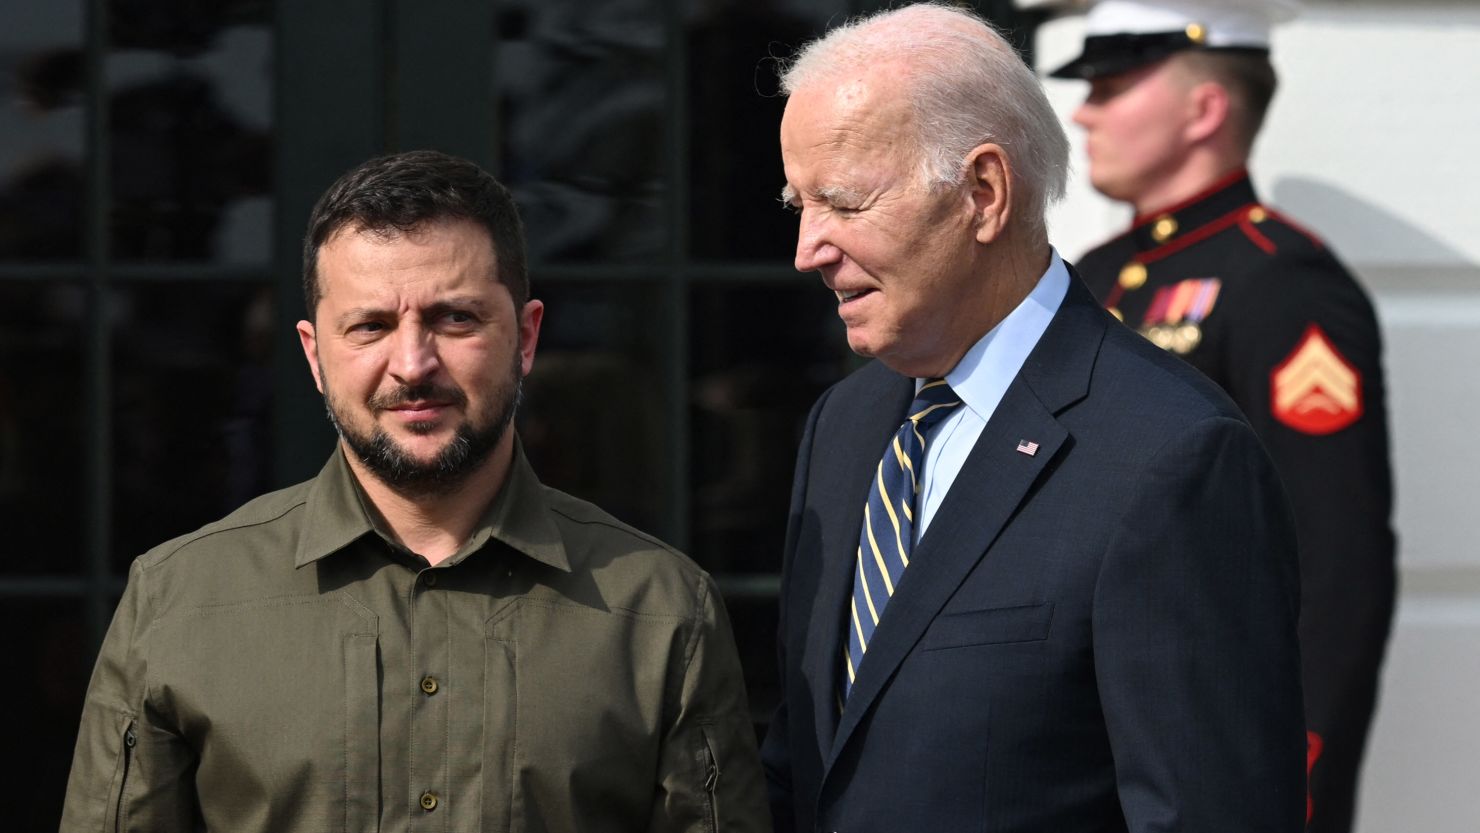 President Joe Biden welcomes Ukrainian President Volodymyr Zelensky at the White House on September 21, 2023.